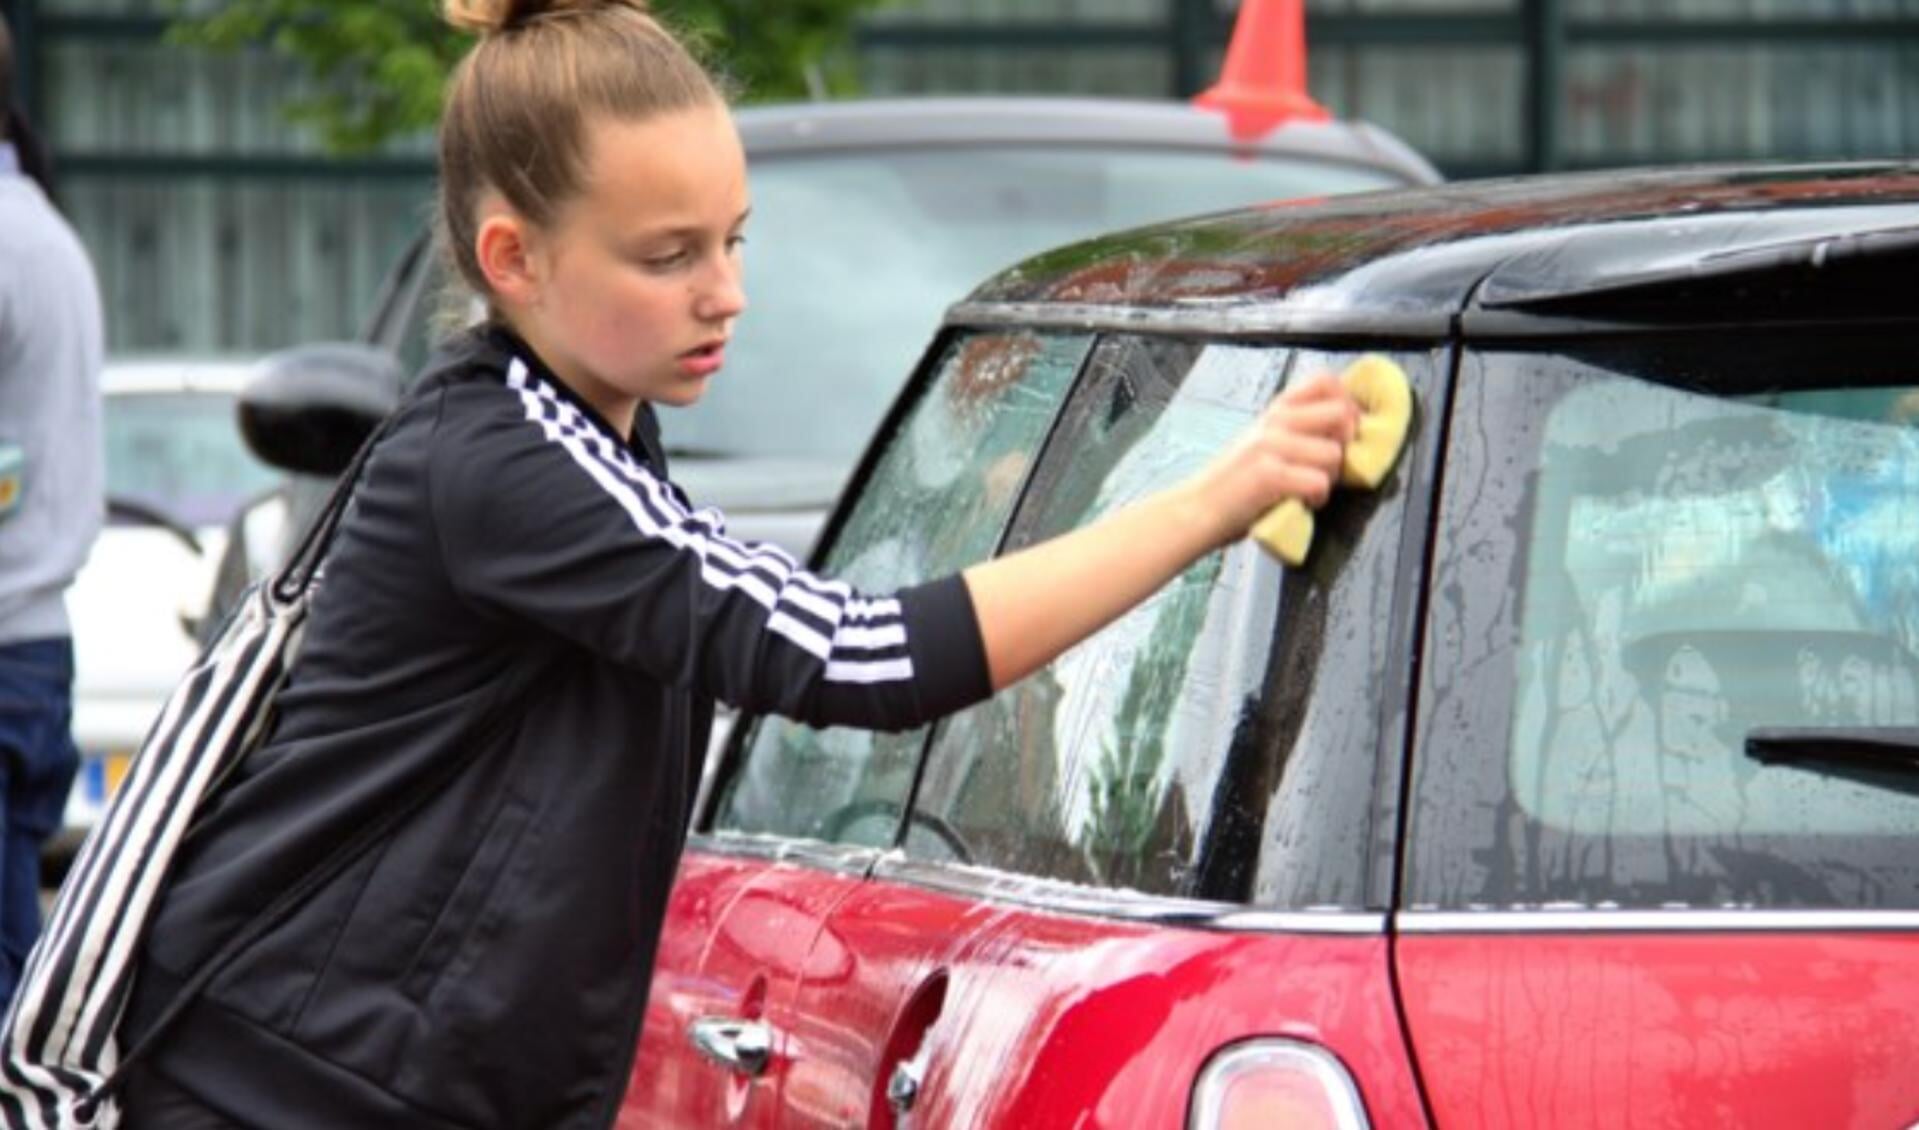 Schoolverlaters wassen je auto voor 4 euro. Opbrengst komt ten goede aan het schoolverlaterskamp.